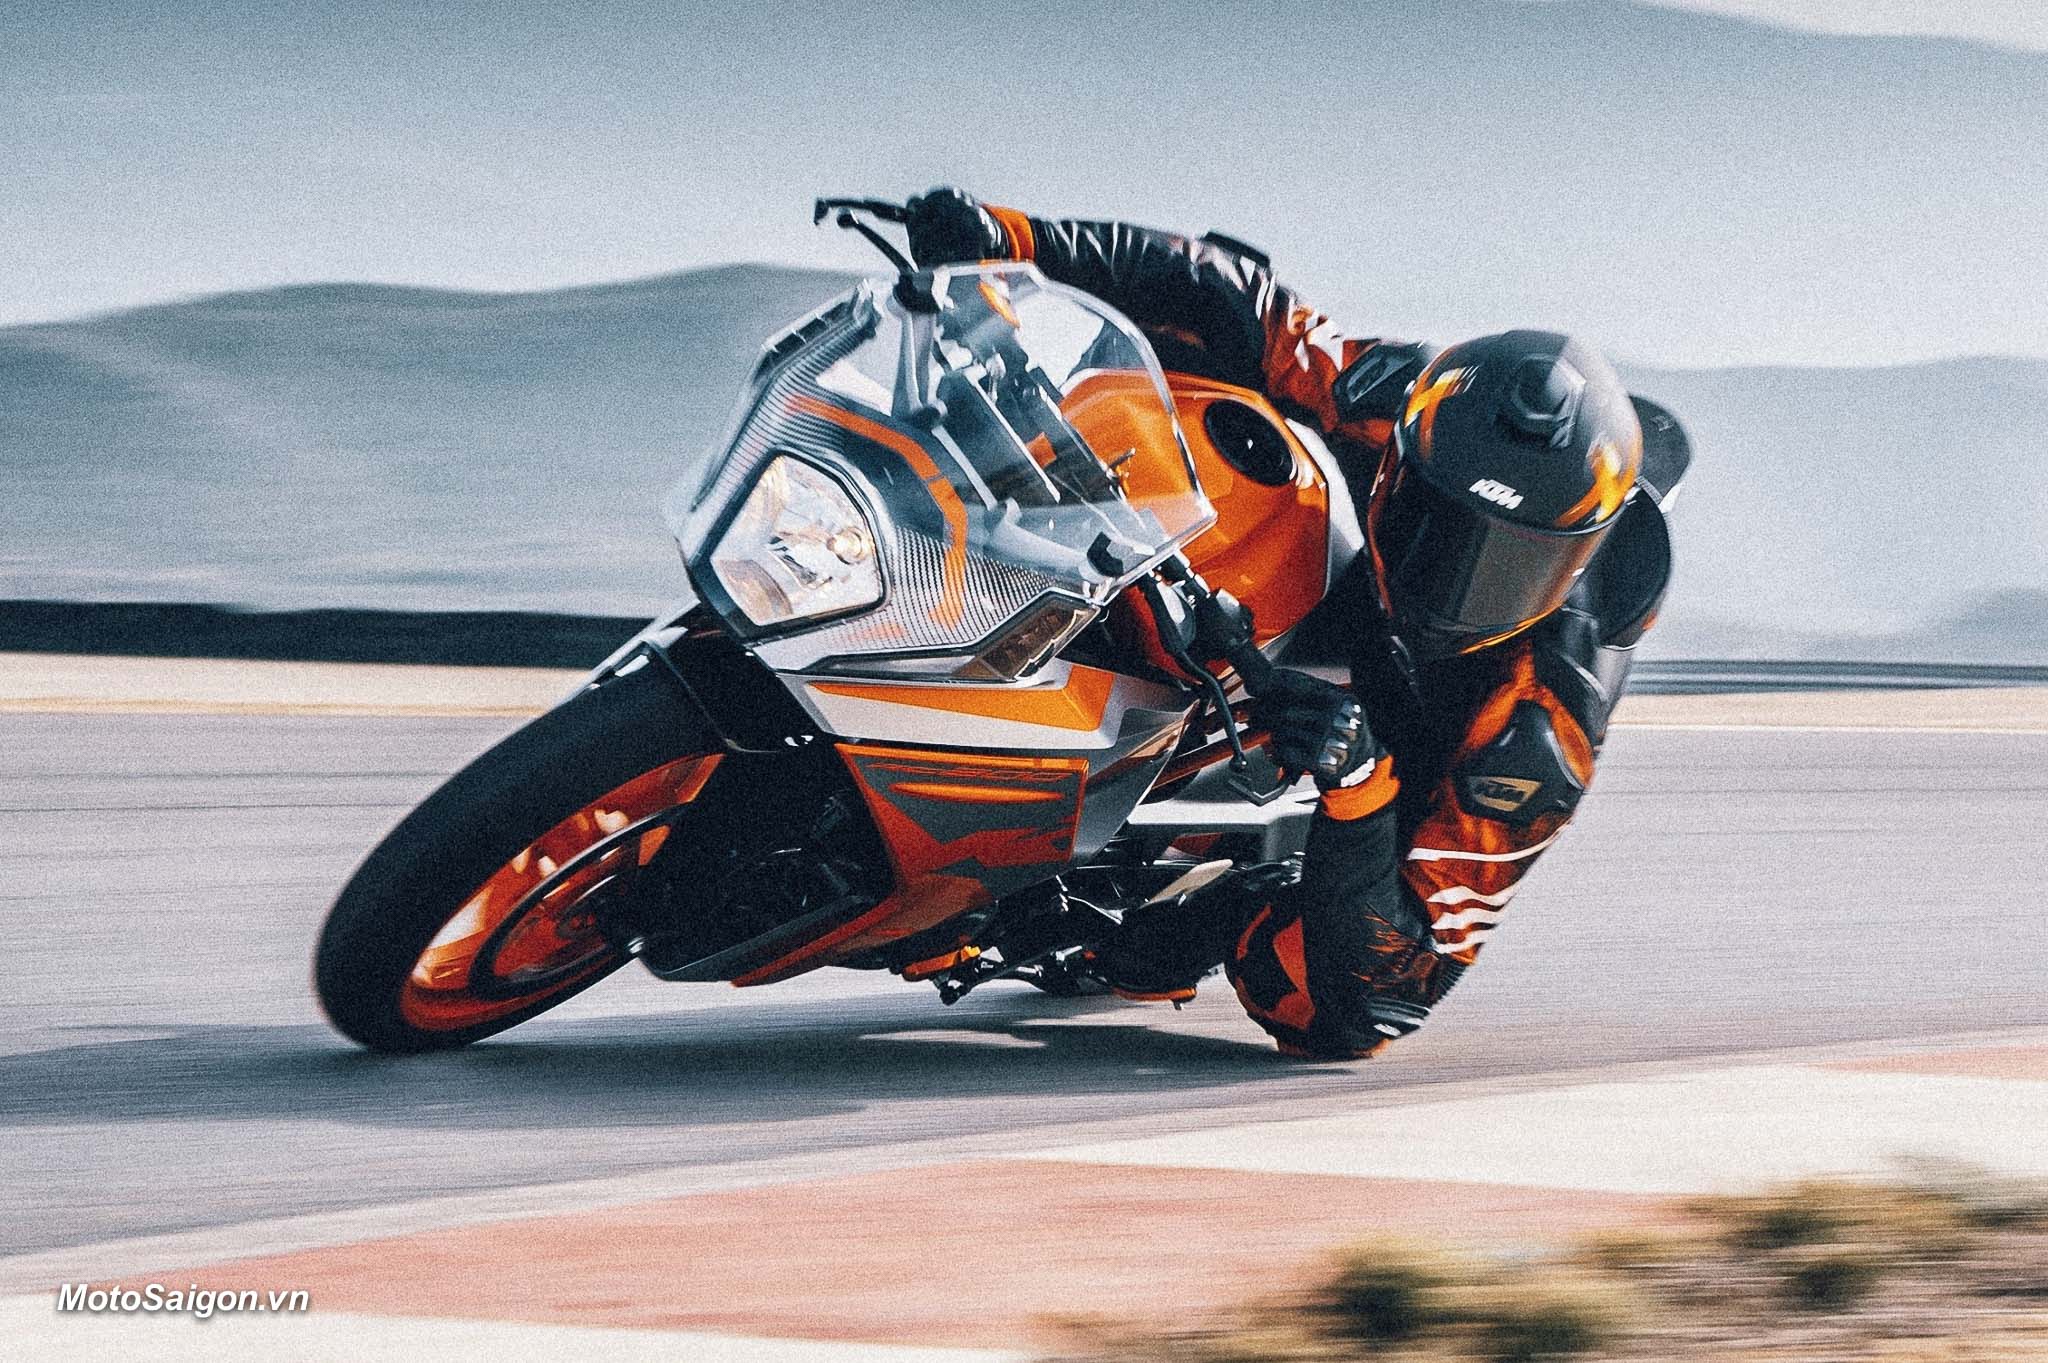 KTM RC 200 2022 bất ngờ ra mắt với giá bán hấp dẫn dành cho biker mới